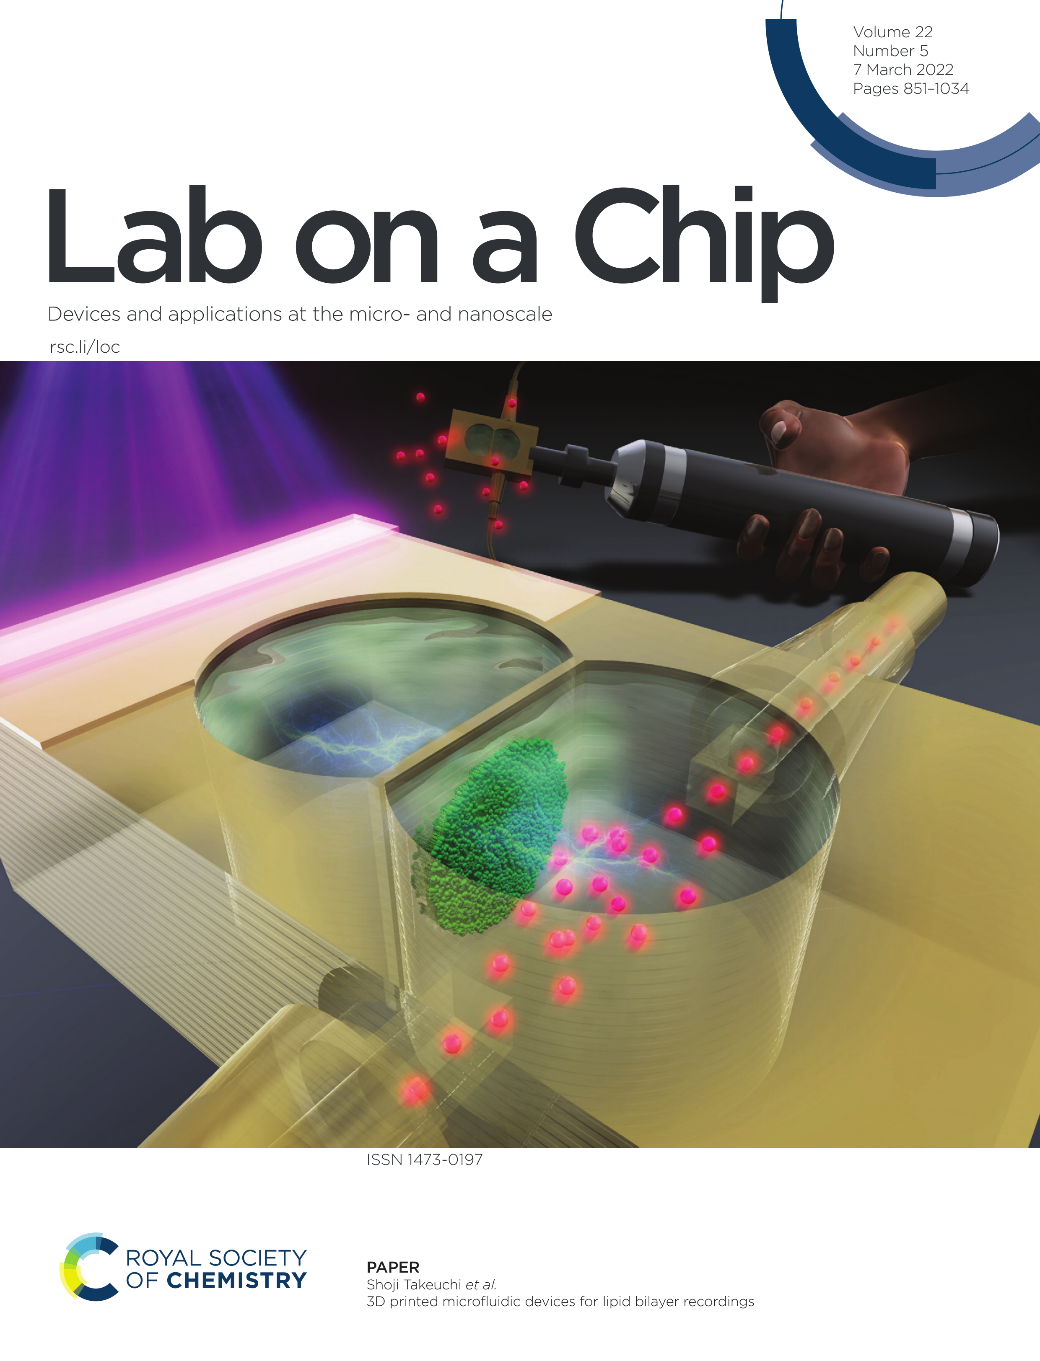 東大竹内教授と共同研究チームとの研究成果がLab on a Chipの表紙に掲載